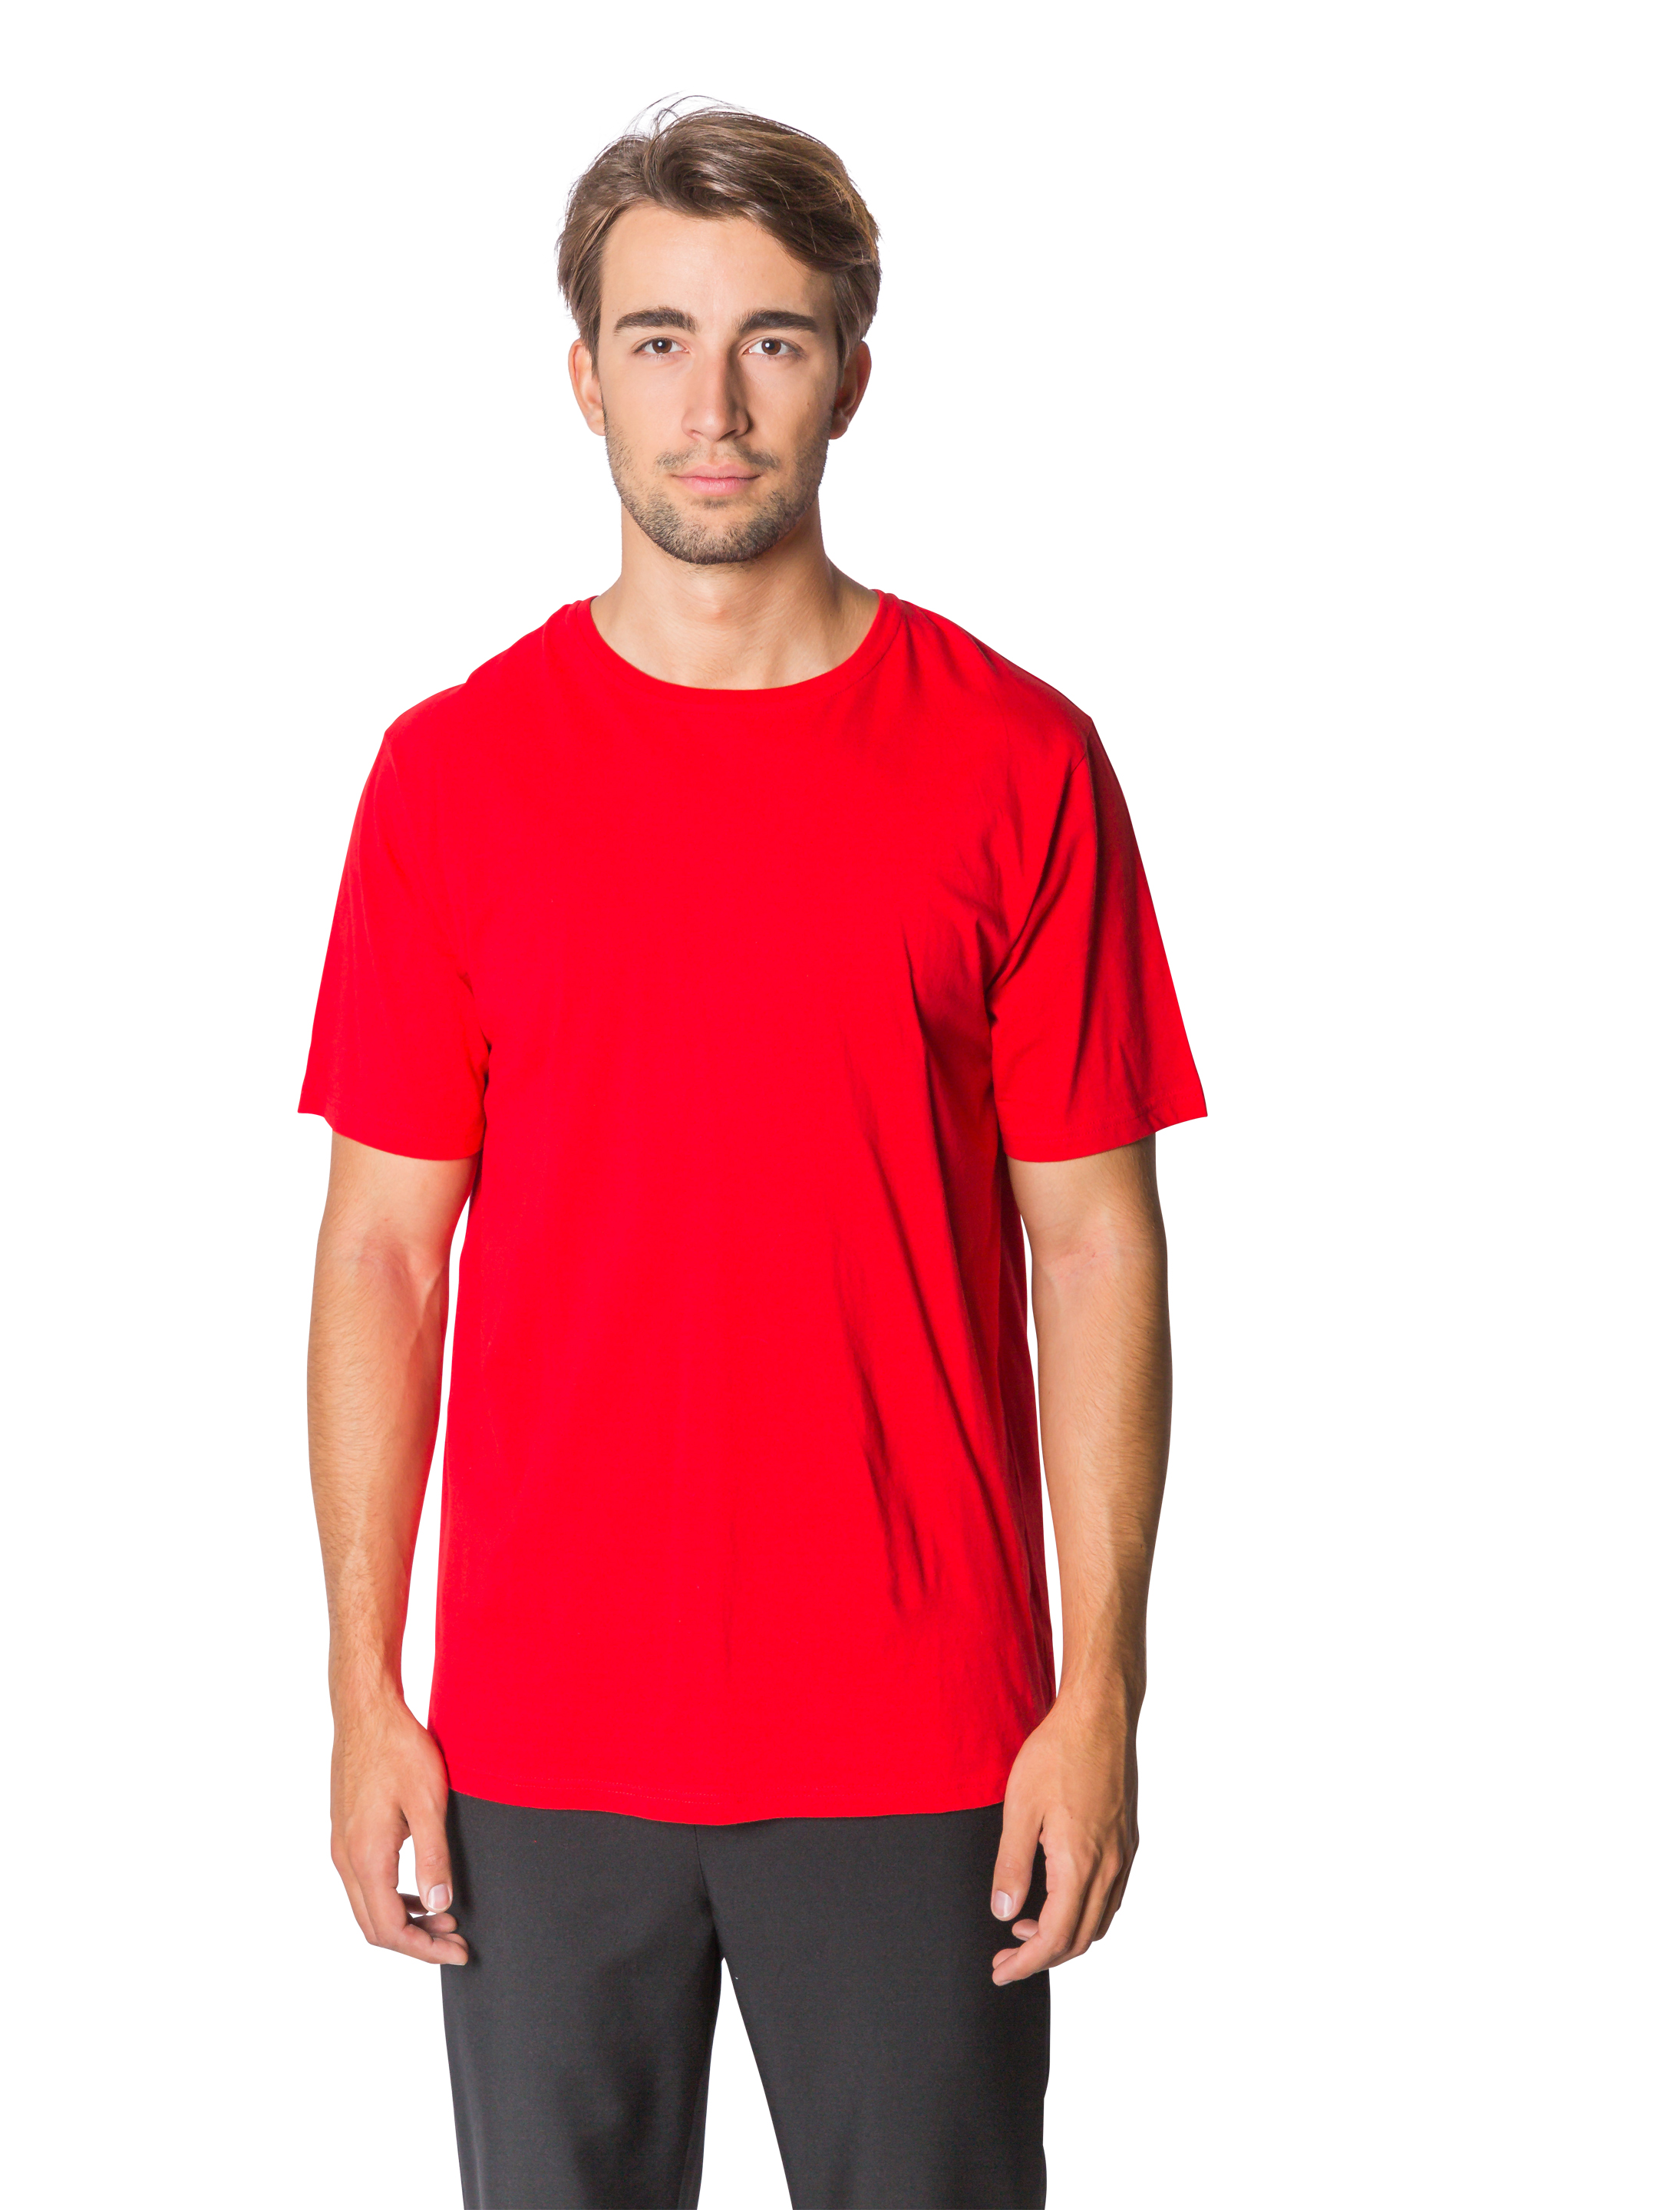 T-Shirt Herren rot 2XL